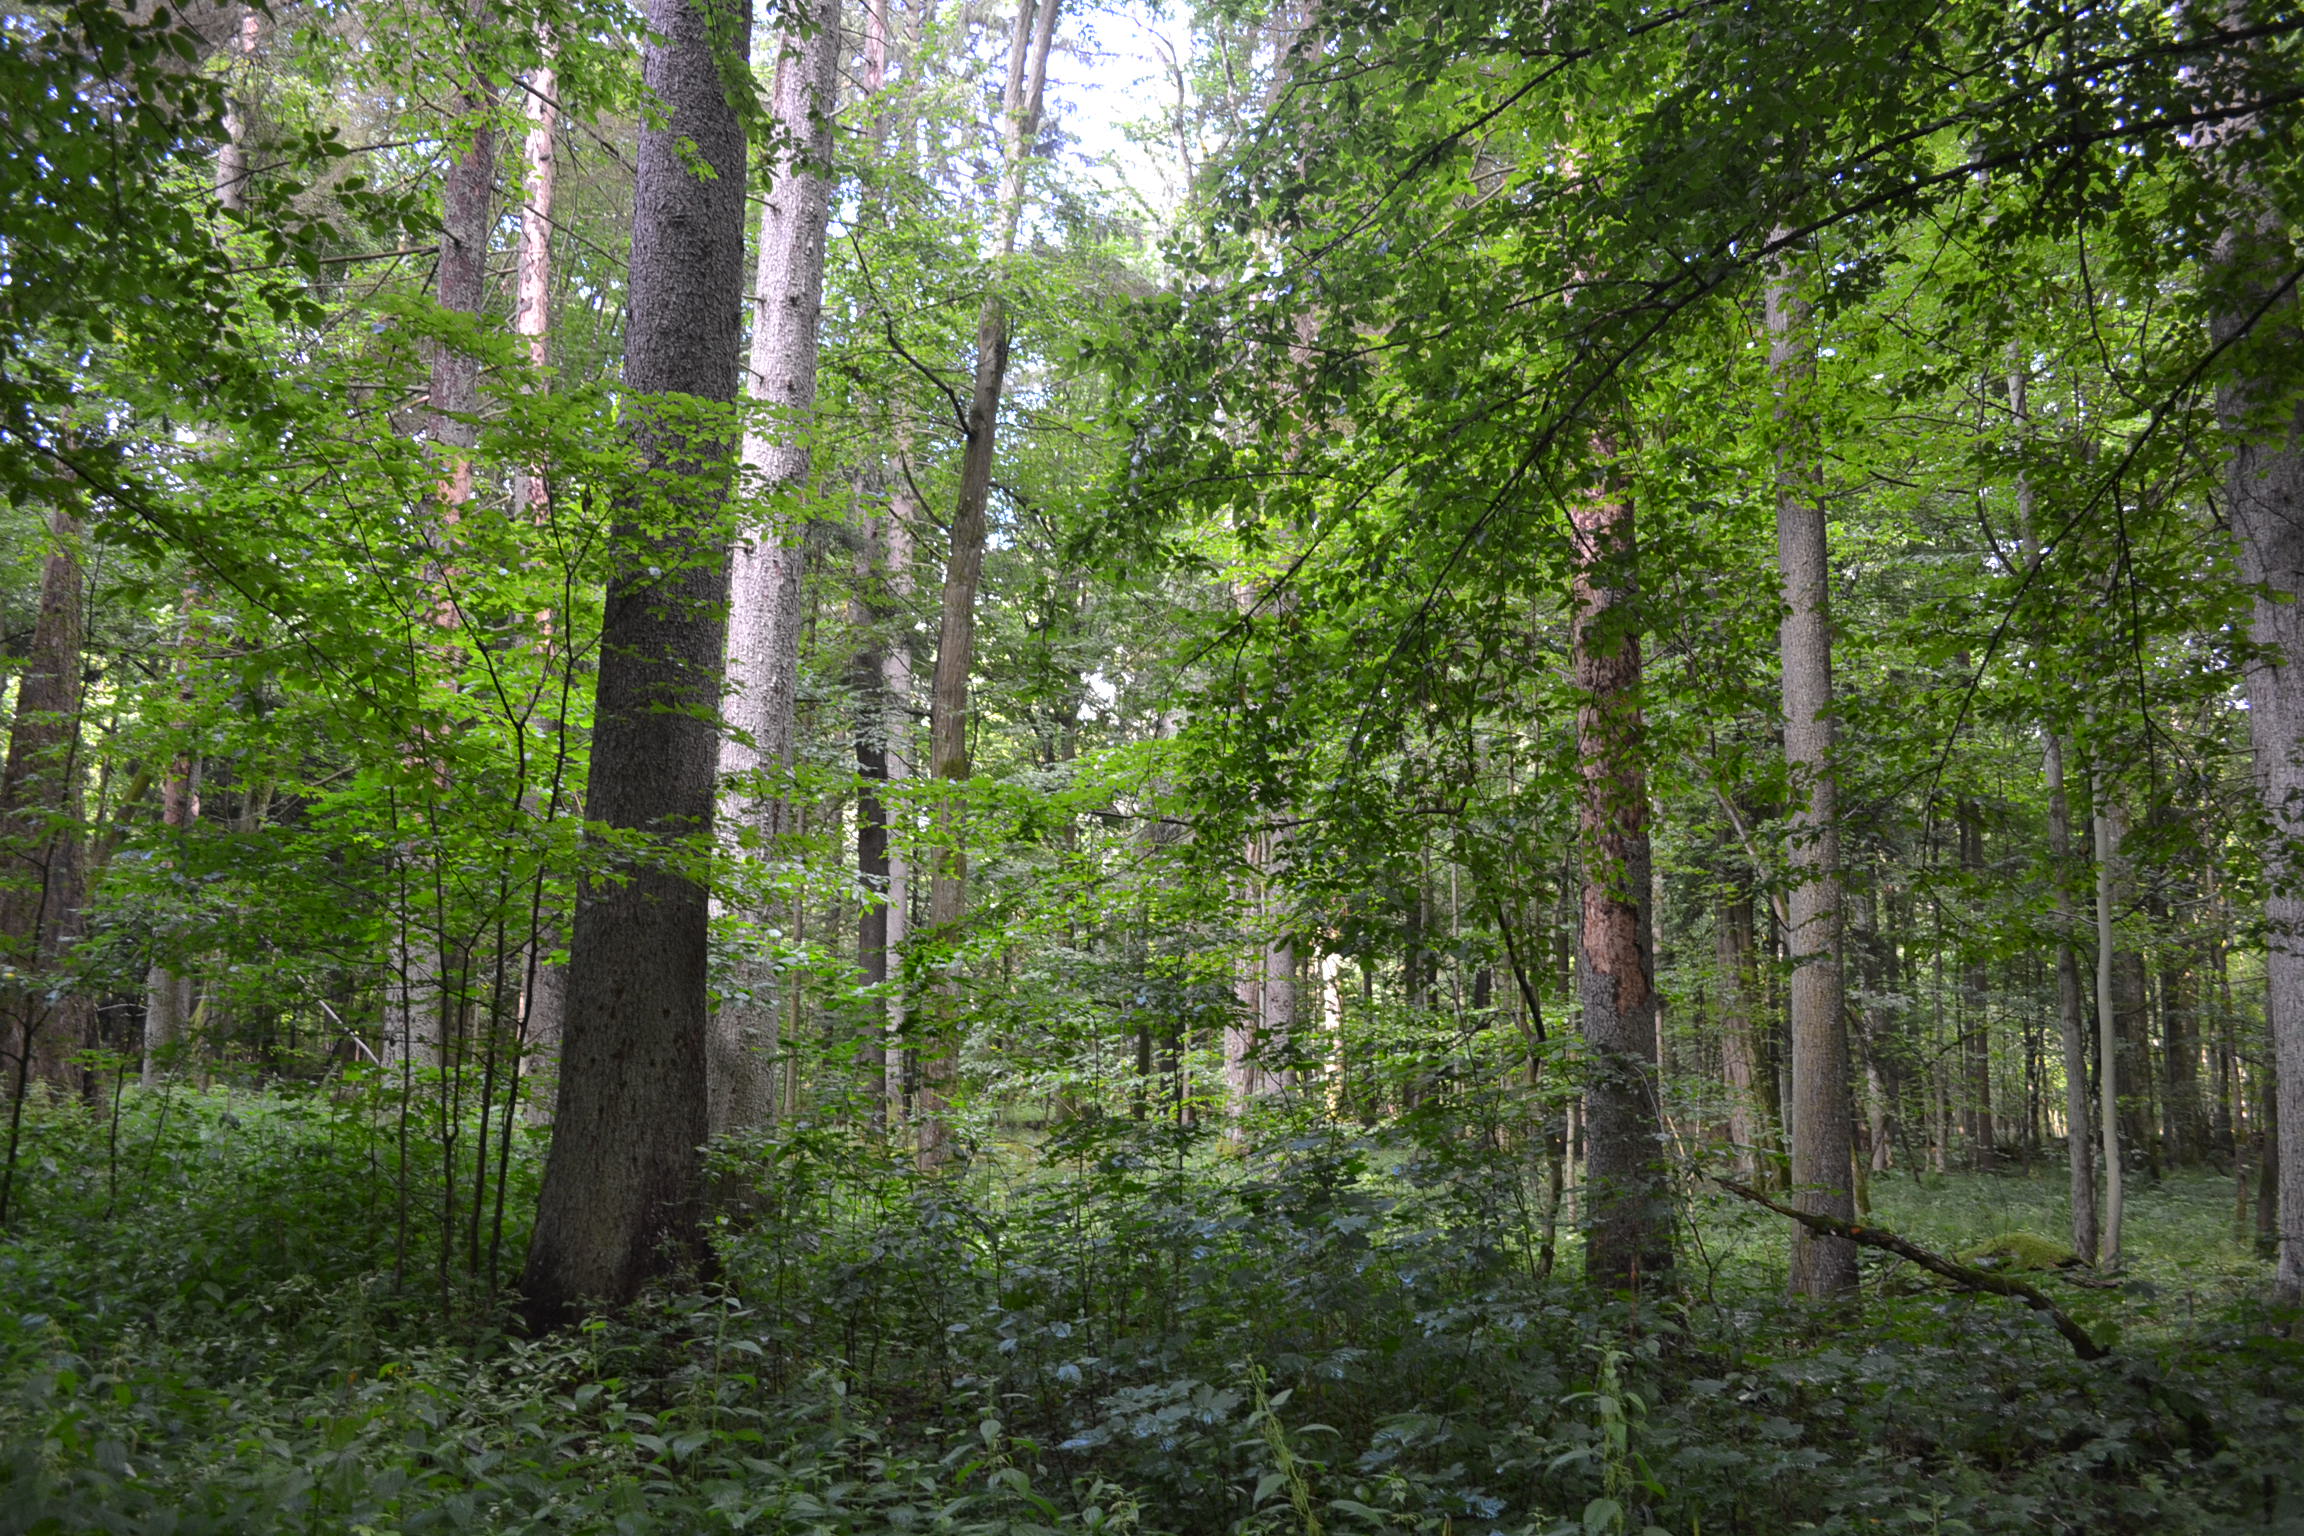 ヨーロッパ最後の秘境・世界遺産ビャウォヴィエジャの森を回る